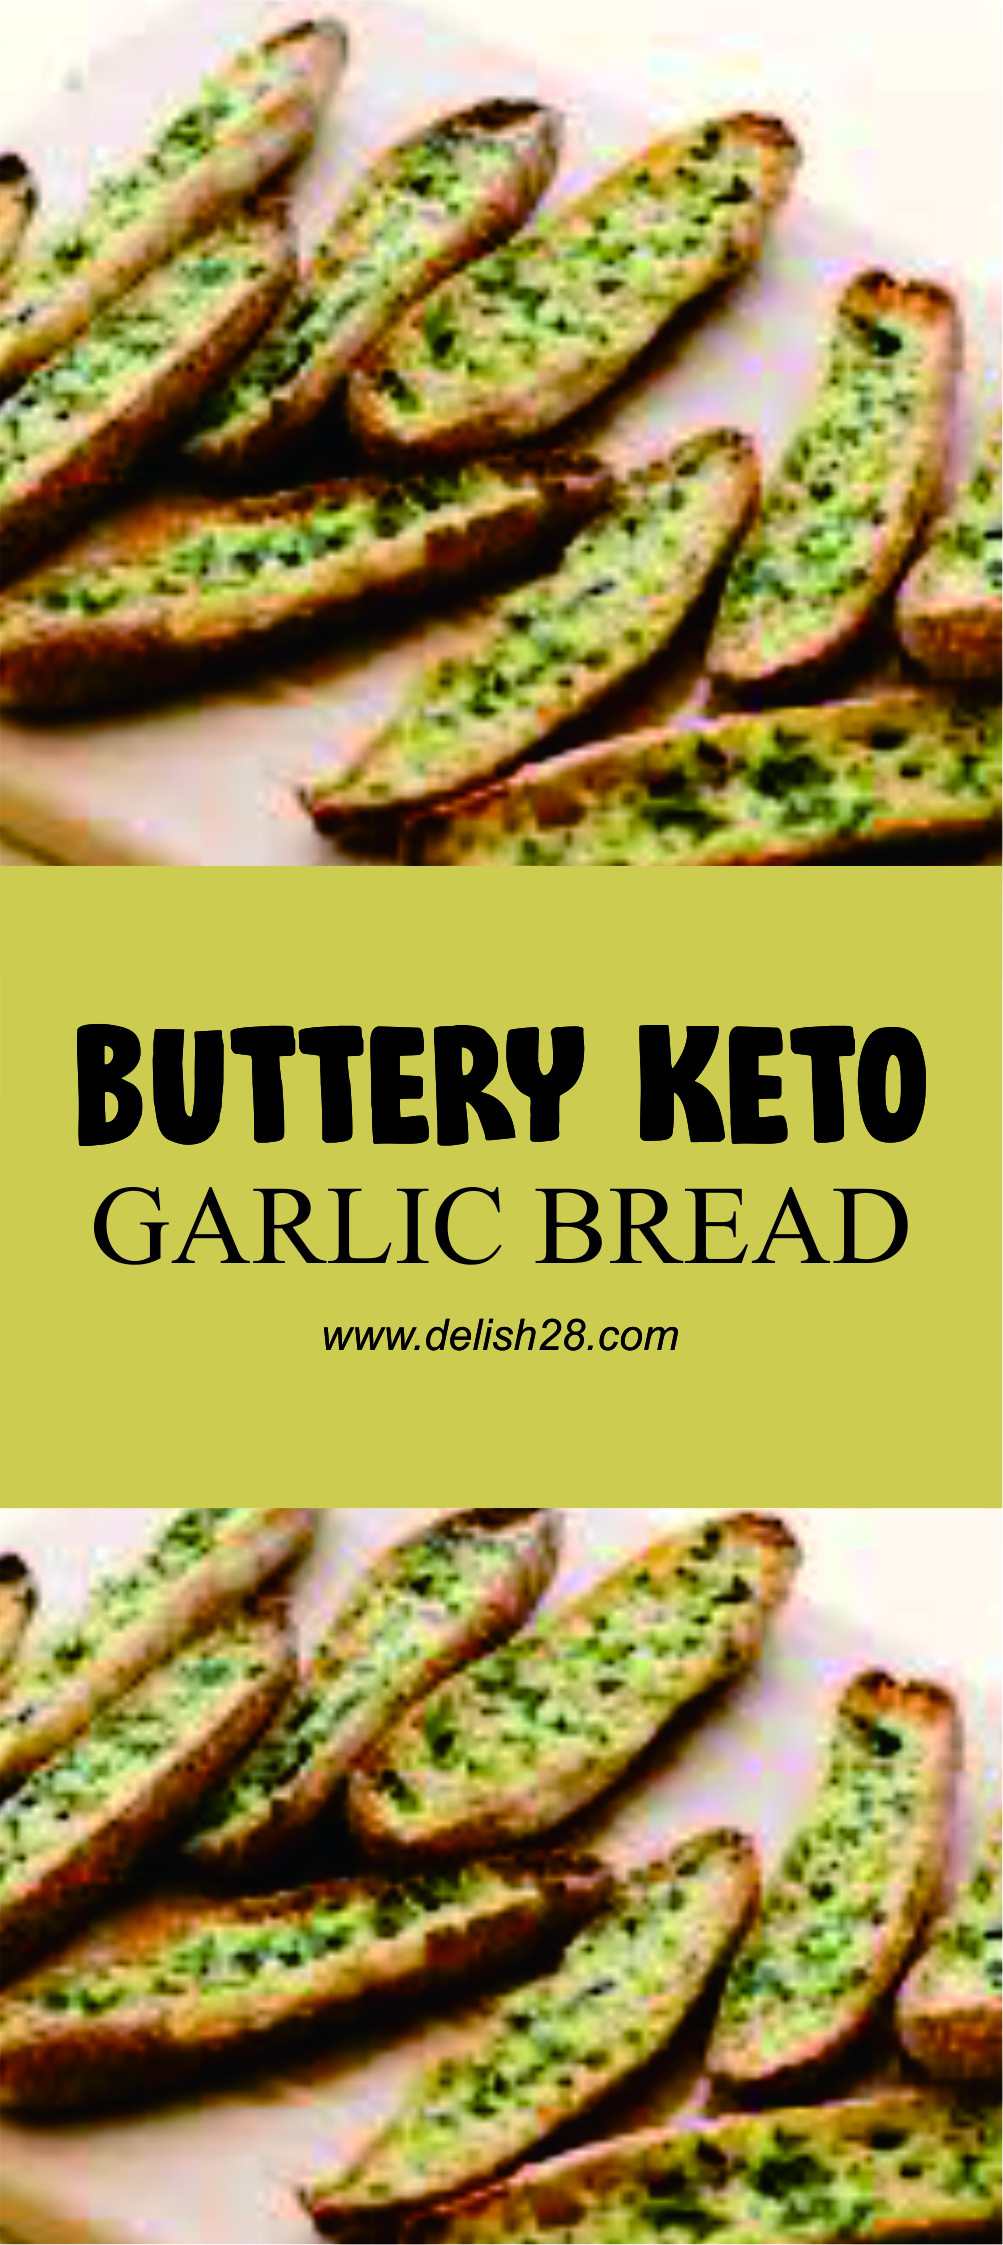 Delish Keto Garlic Bread
 BUTTERY KETO GARLIC BREAD delish28